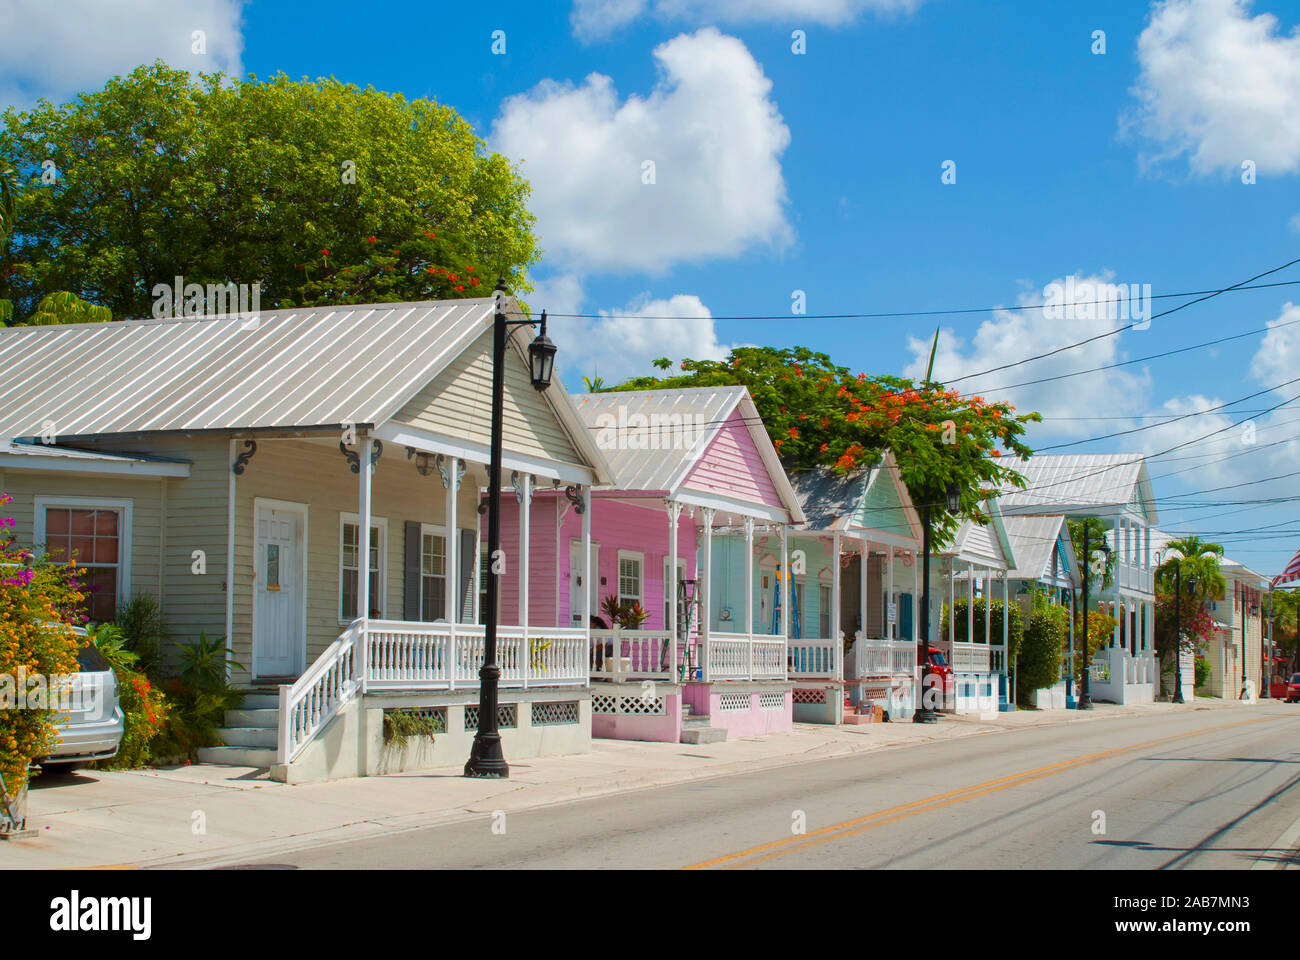 Key West avec streetview architecture en bois typique Banque D'Images